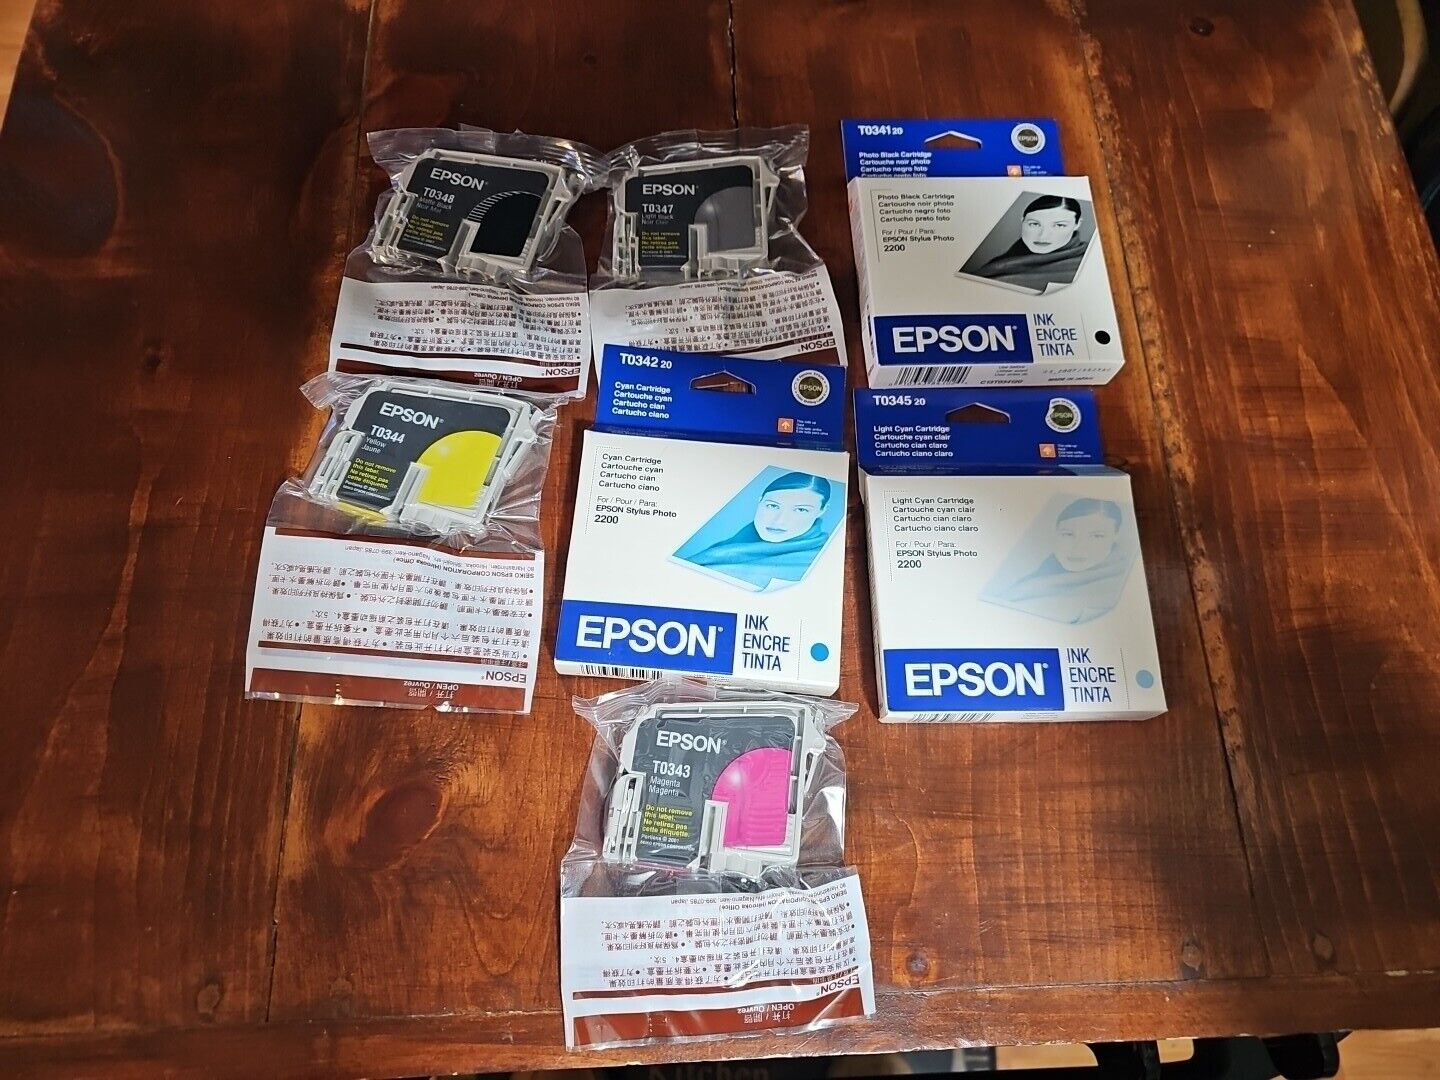 SET OF 7 Epson Stylus  Photo 2200 Ink Cartridges T034 Factory Sealed Expired